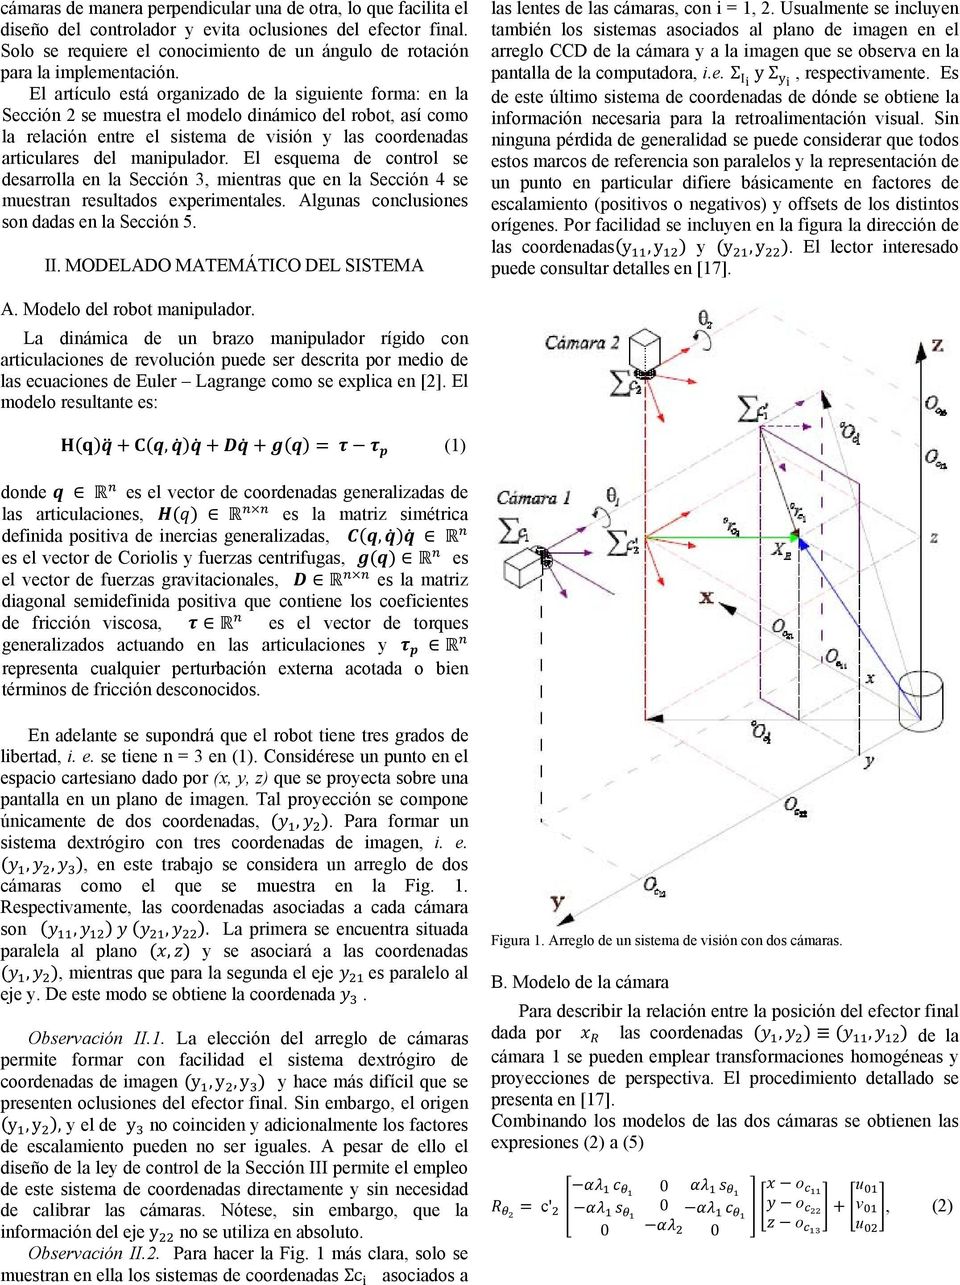 El artículo está organizado de la siguiente forma: en la Sección 2 se muestra el modelo dinámico del robot, así como la relación entre el sistema de visión y las coordenadas articulares del